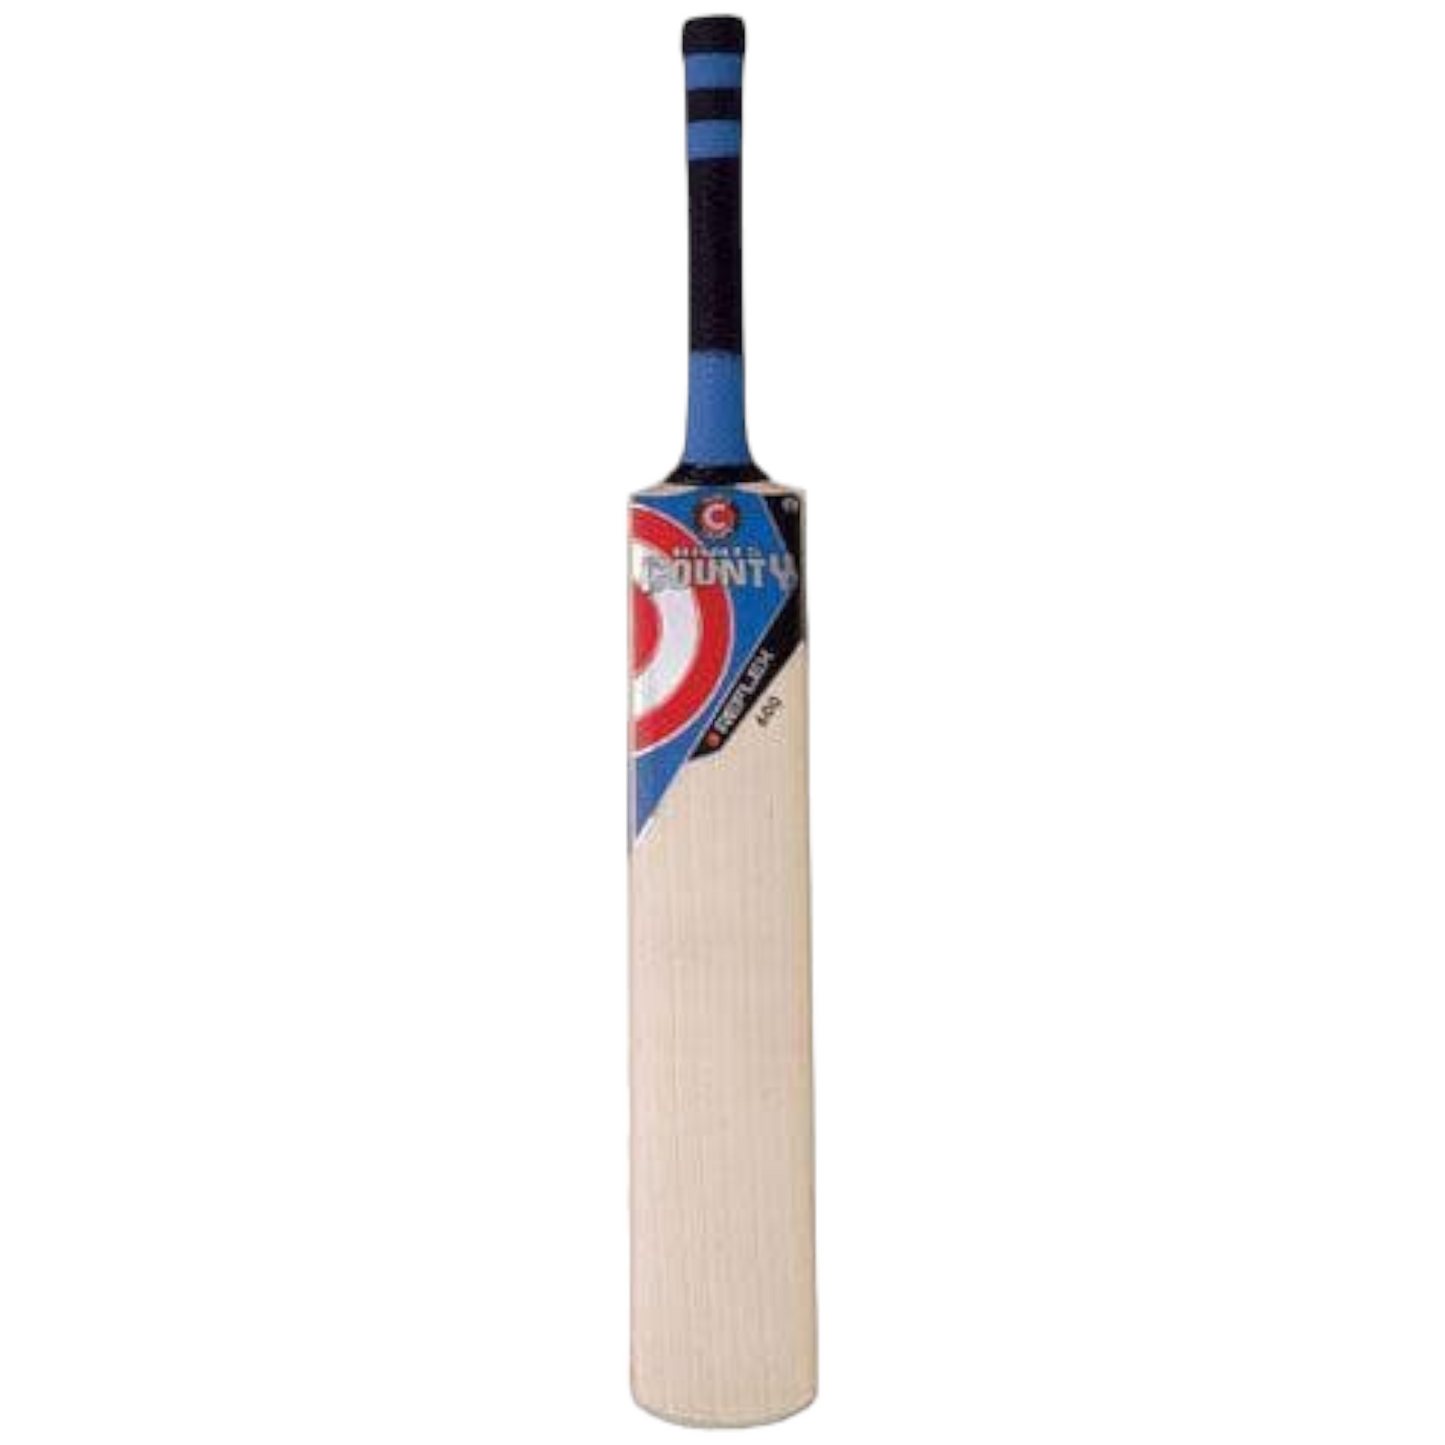 Hunts Count Reflex MBP 600 Cricket Bat